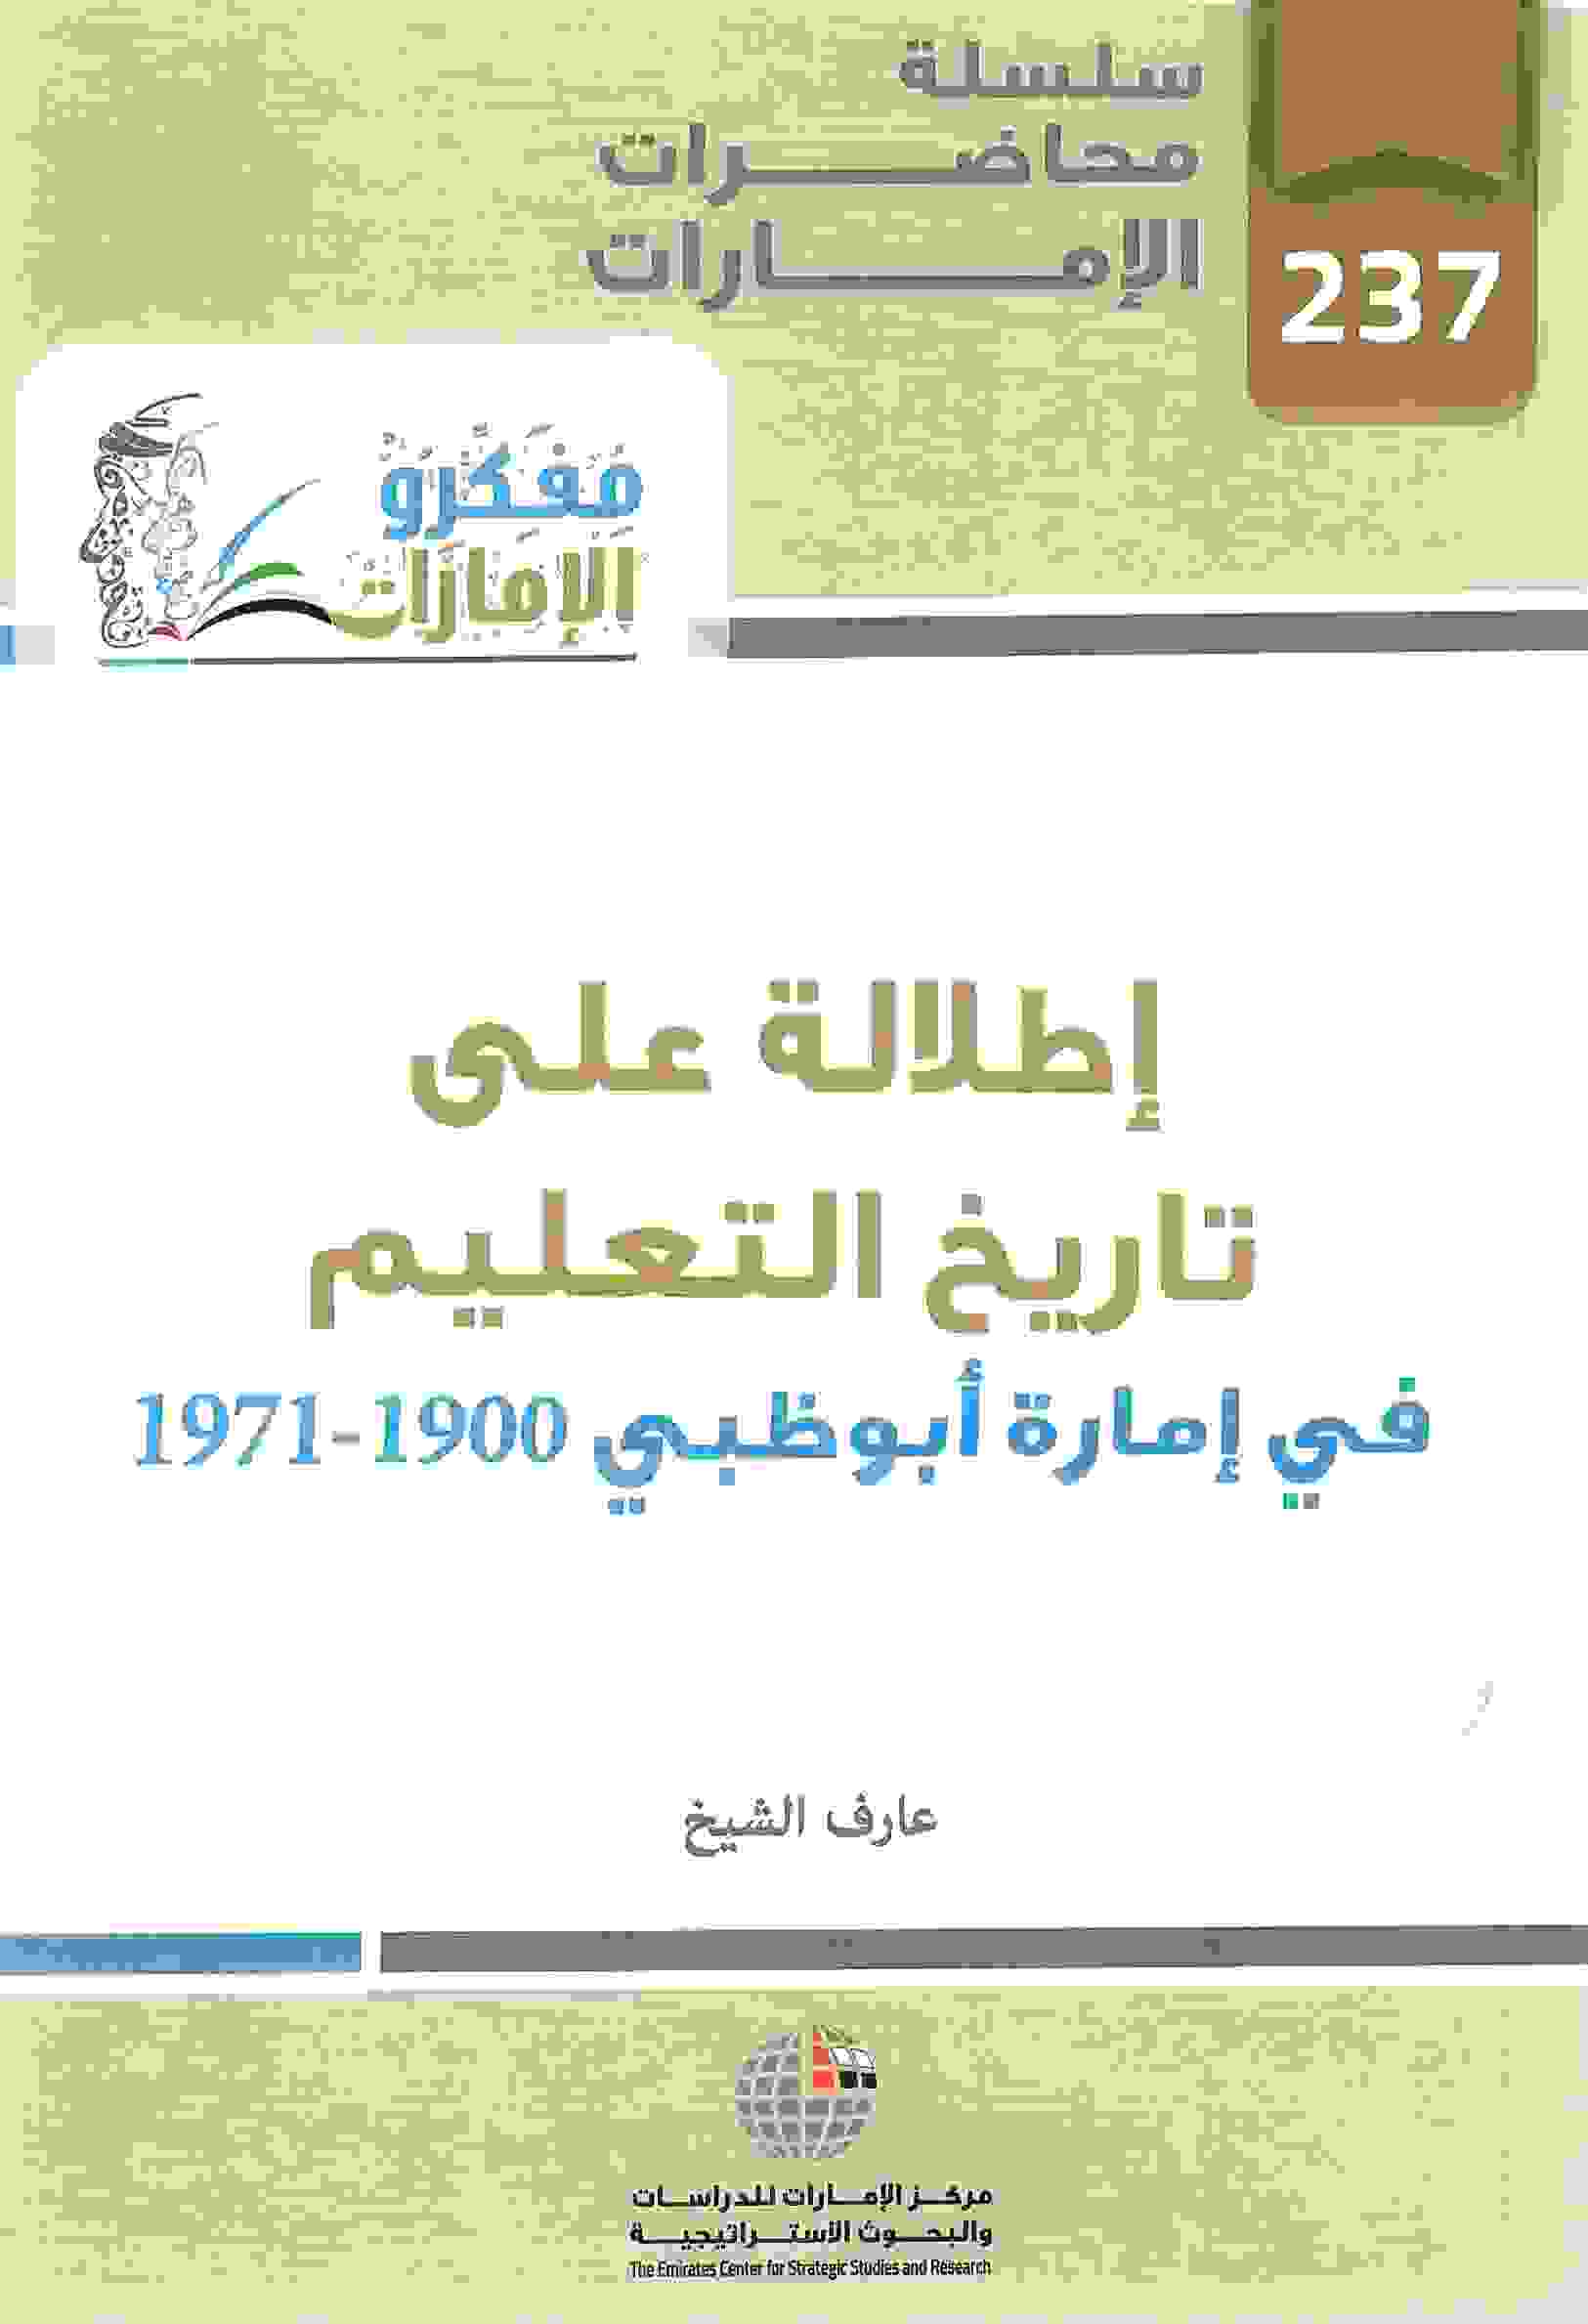 إطلالة على تاريخ العلم في إمارة أبوظبي 1900-1971